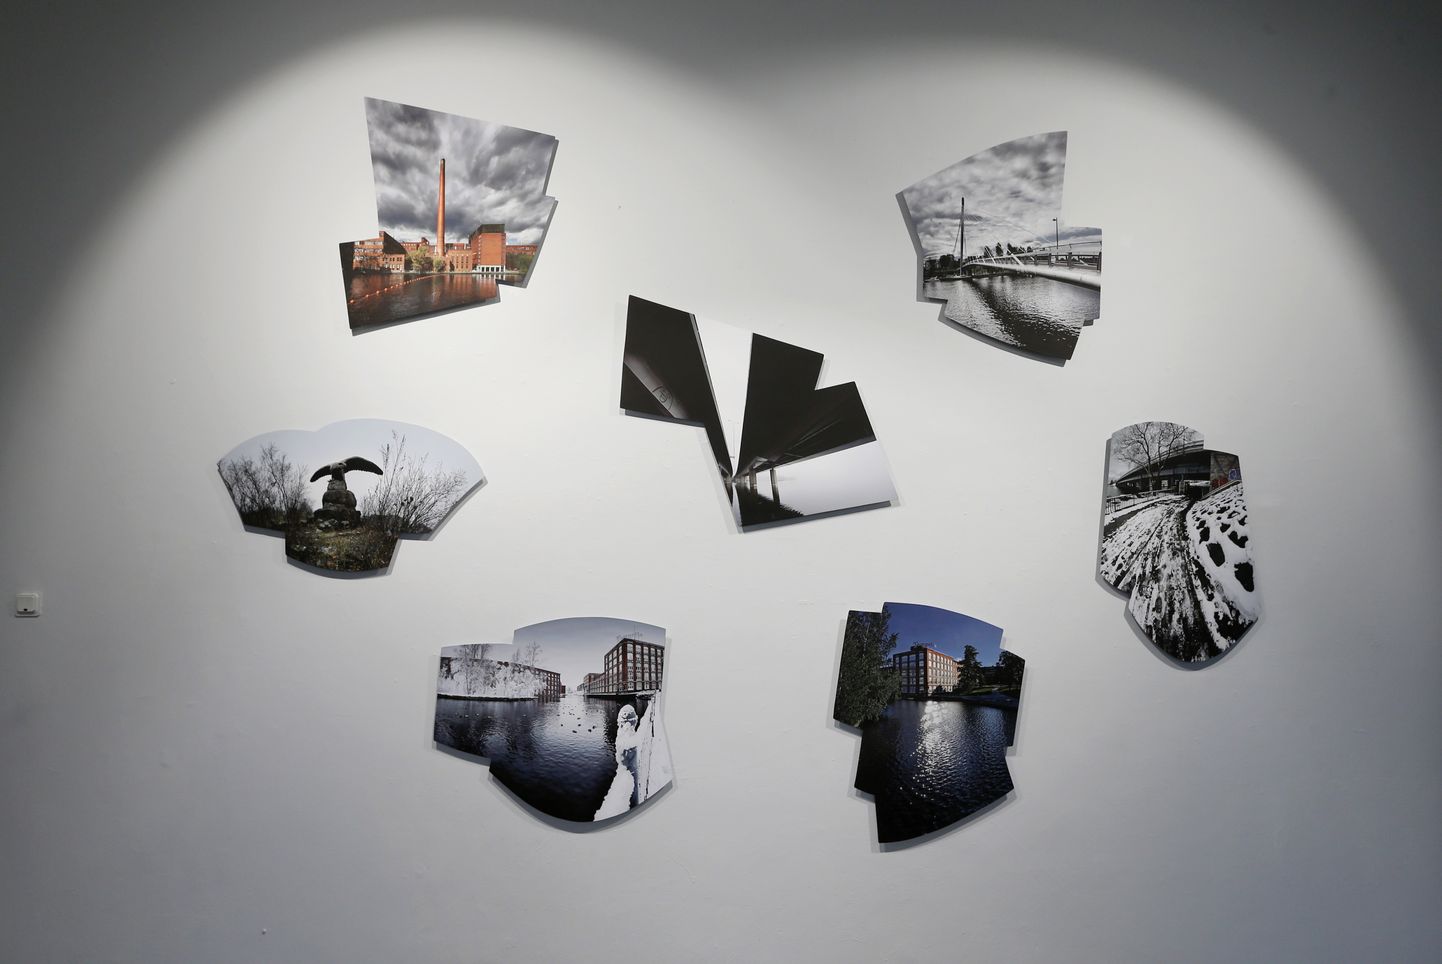 Petri Nuutineni vabavormilised fotod näitusel Nooruse galeriis.